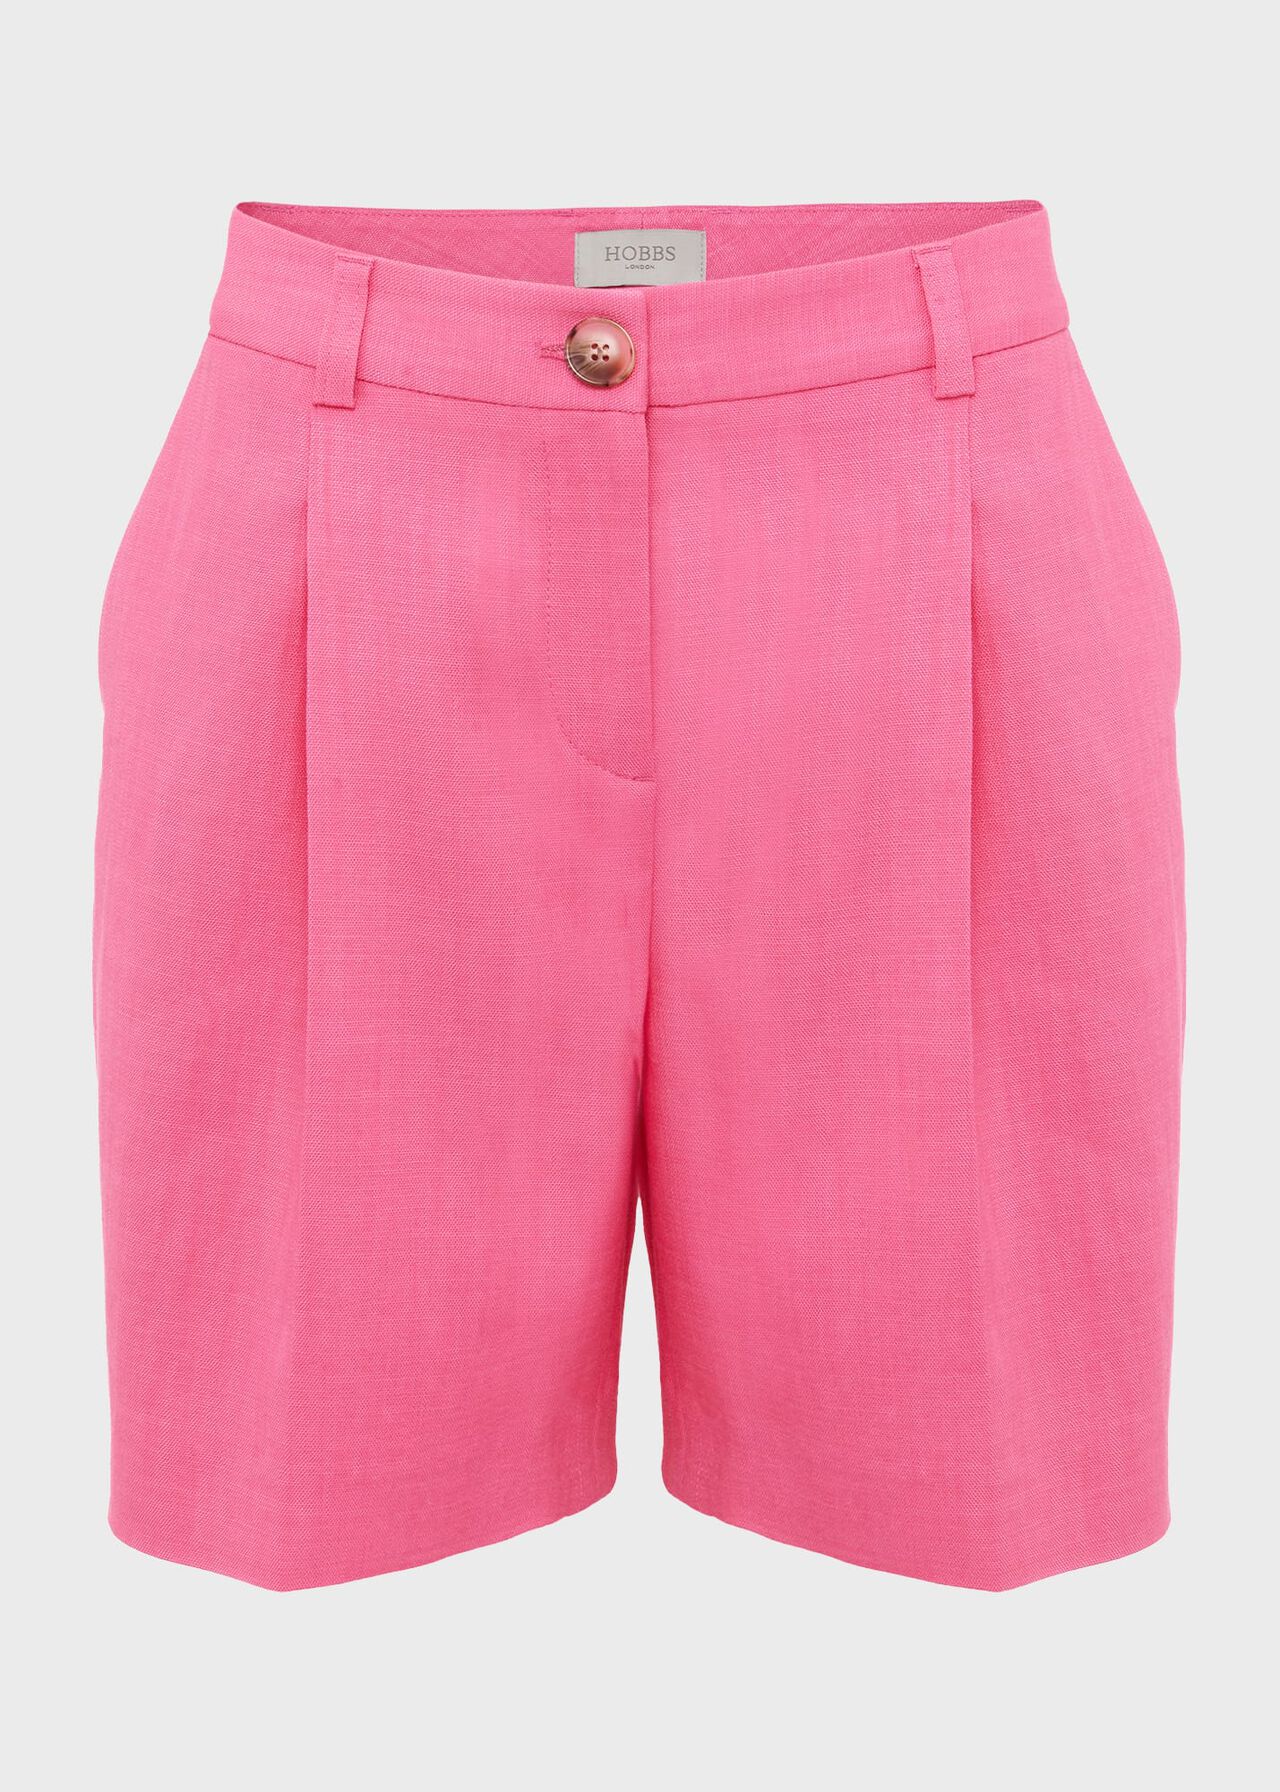 Nyla Shorts, Pink, hi-res